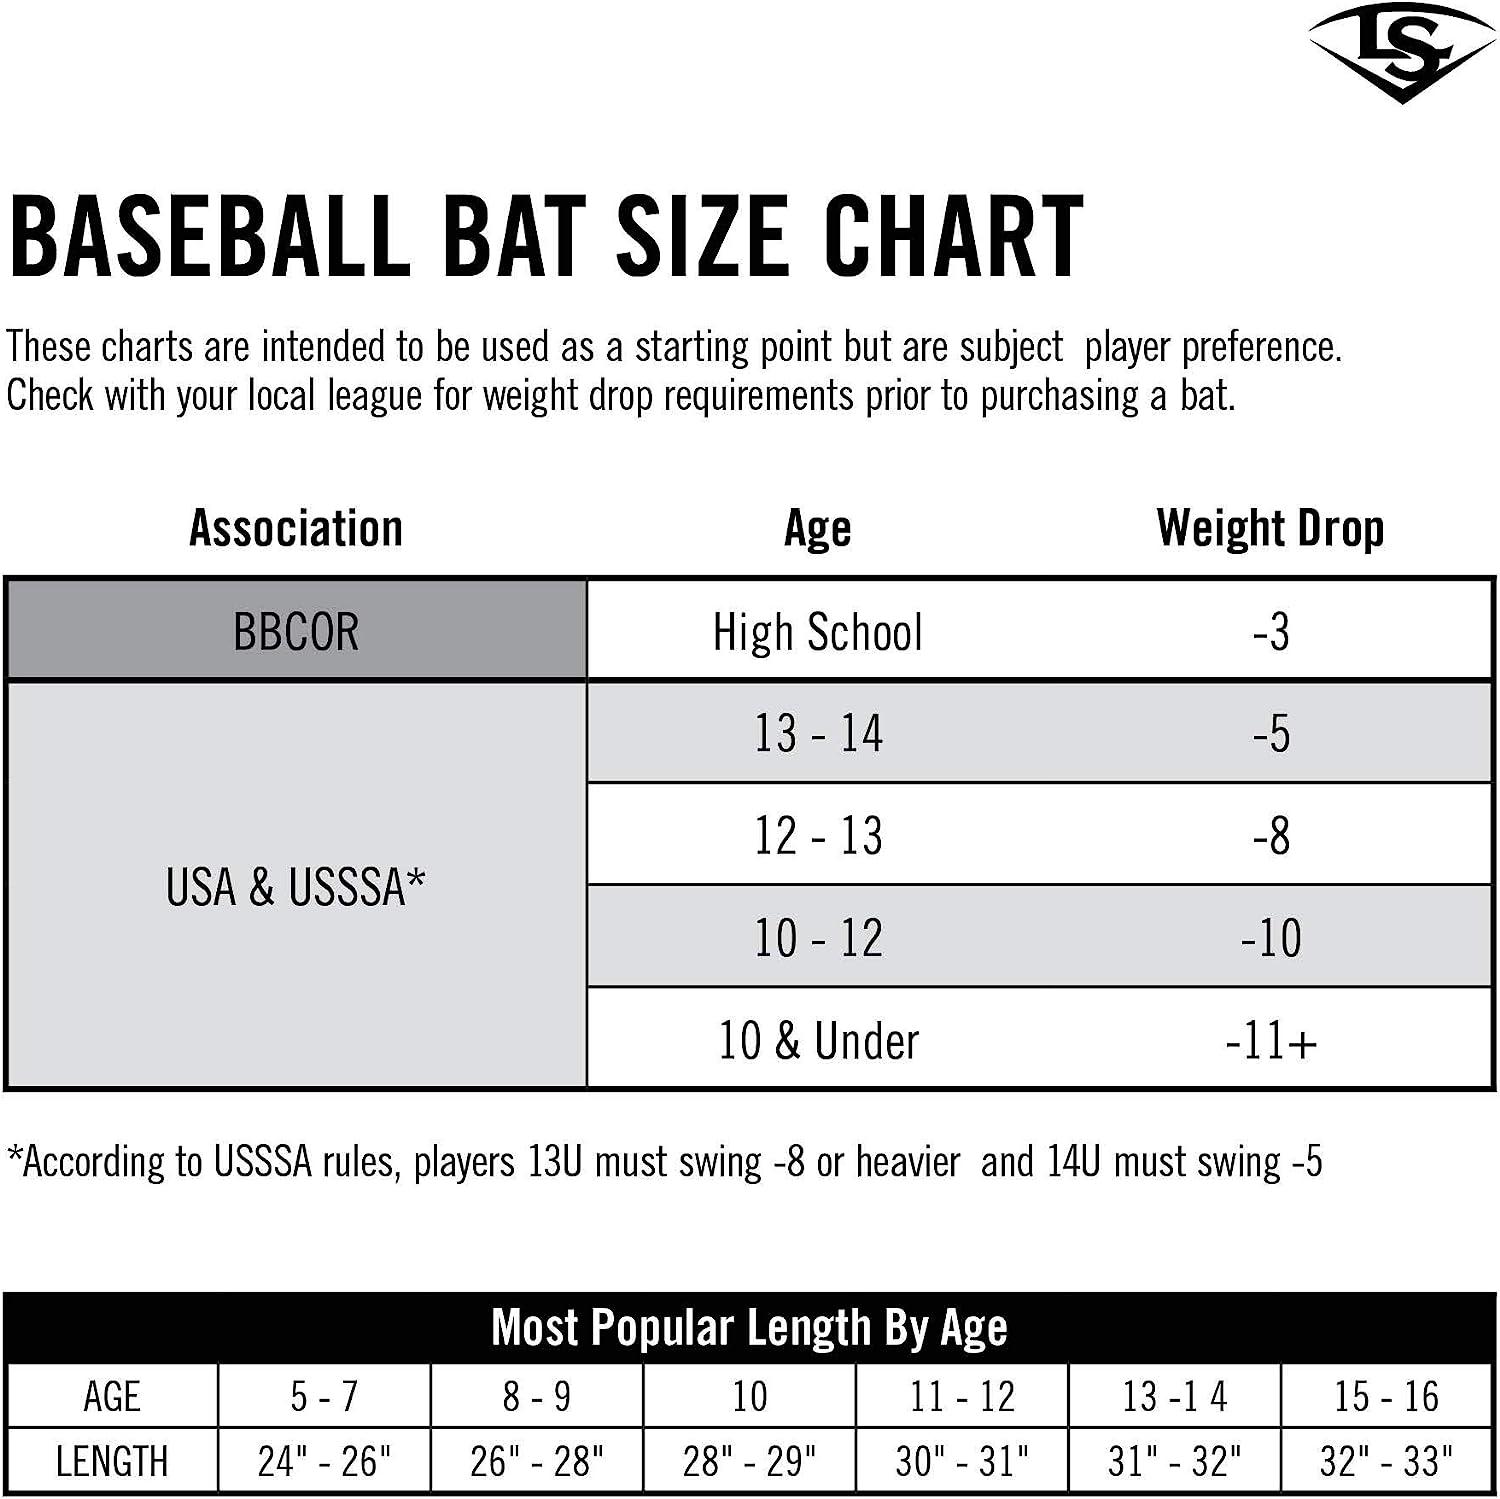 Meet the 2019 Louisville Slugger BBCOR Bat Lineup